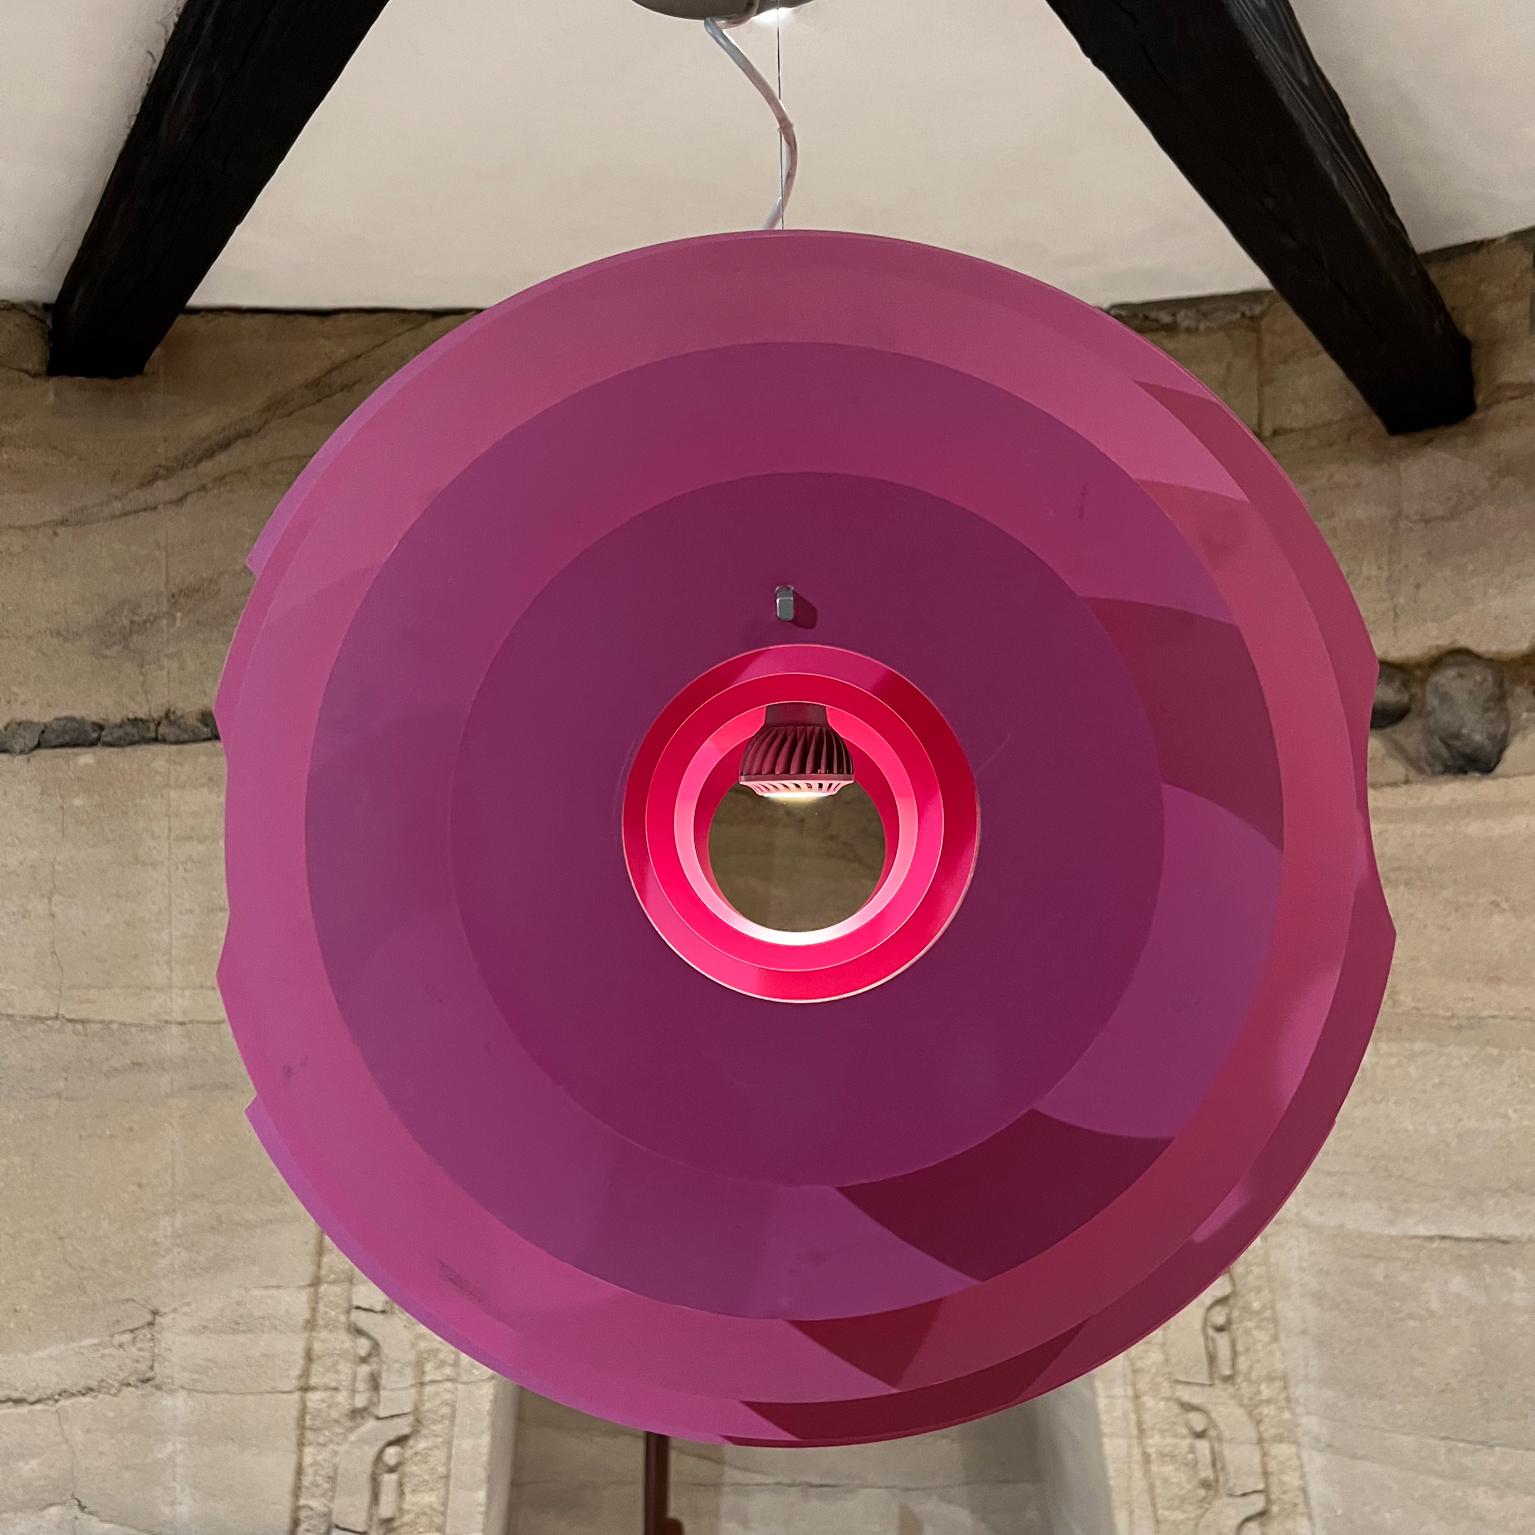 Supernova Hängeleuchte des Architekten Ferruccio Laviani für Foscarini Made in Italy
Licht bietet diffuse Beleuchtungsstärke in alle Richtungen
22,5 B x 20 T x 32,5 hoch
Fabelhafte Farben von Fuchsia Pink
Coates Aluminium beschichtetes